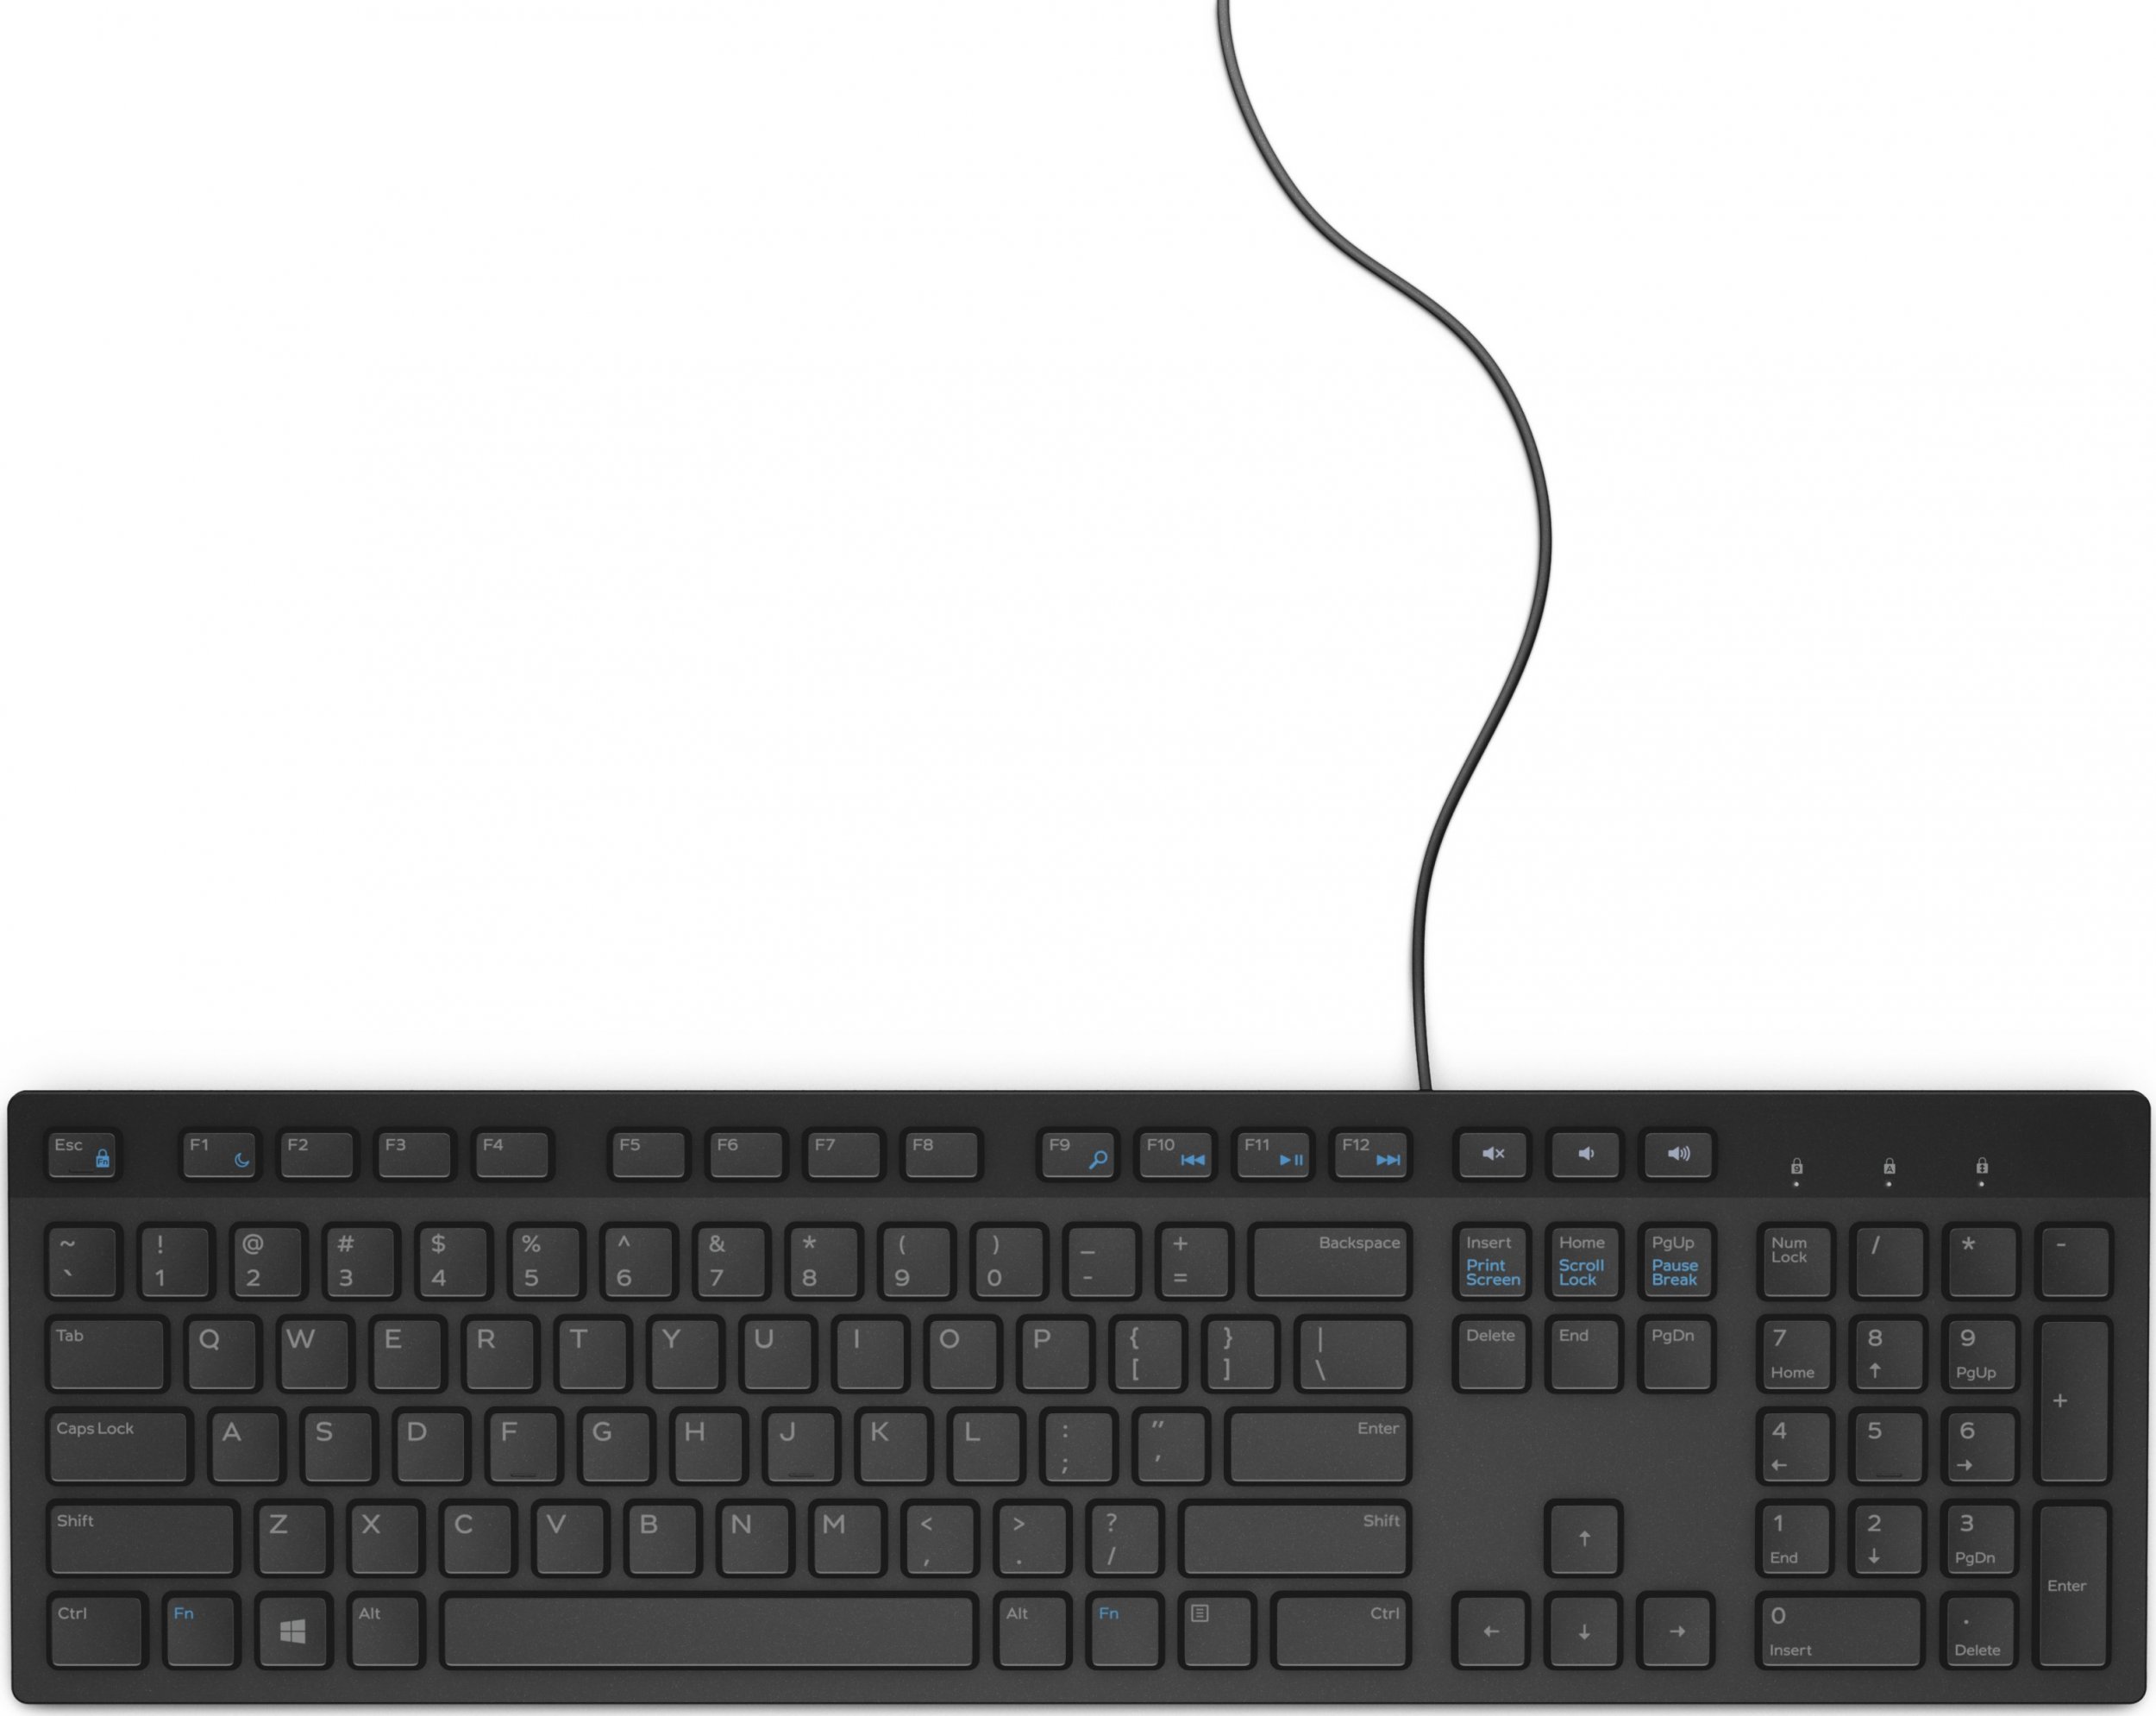 Keyboard USB Dell KB216 Multimedia black klaviatūra